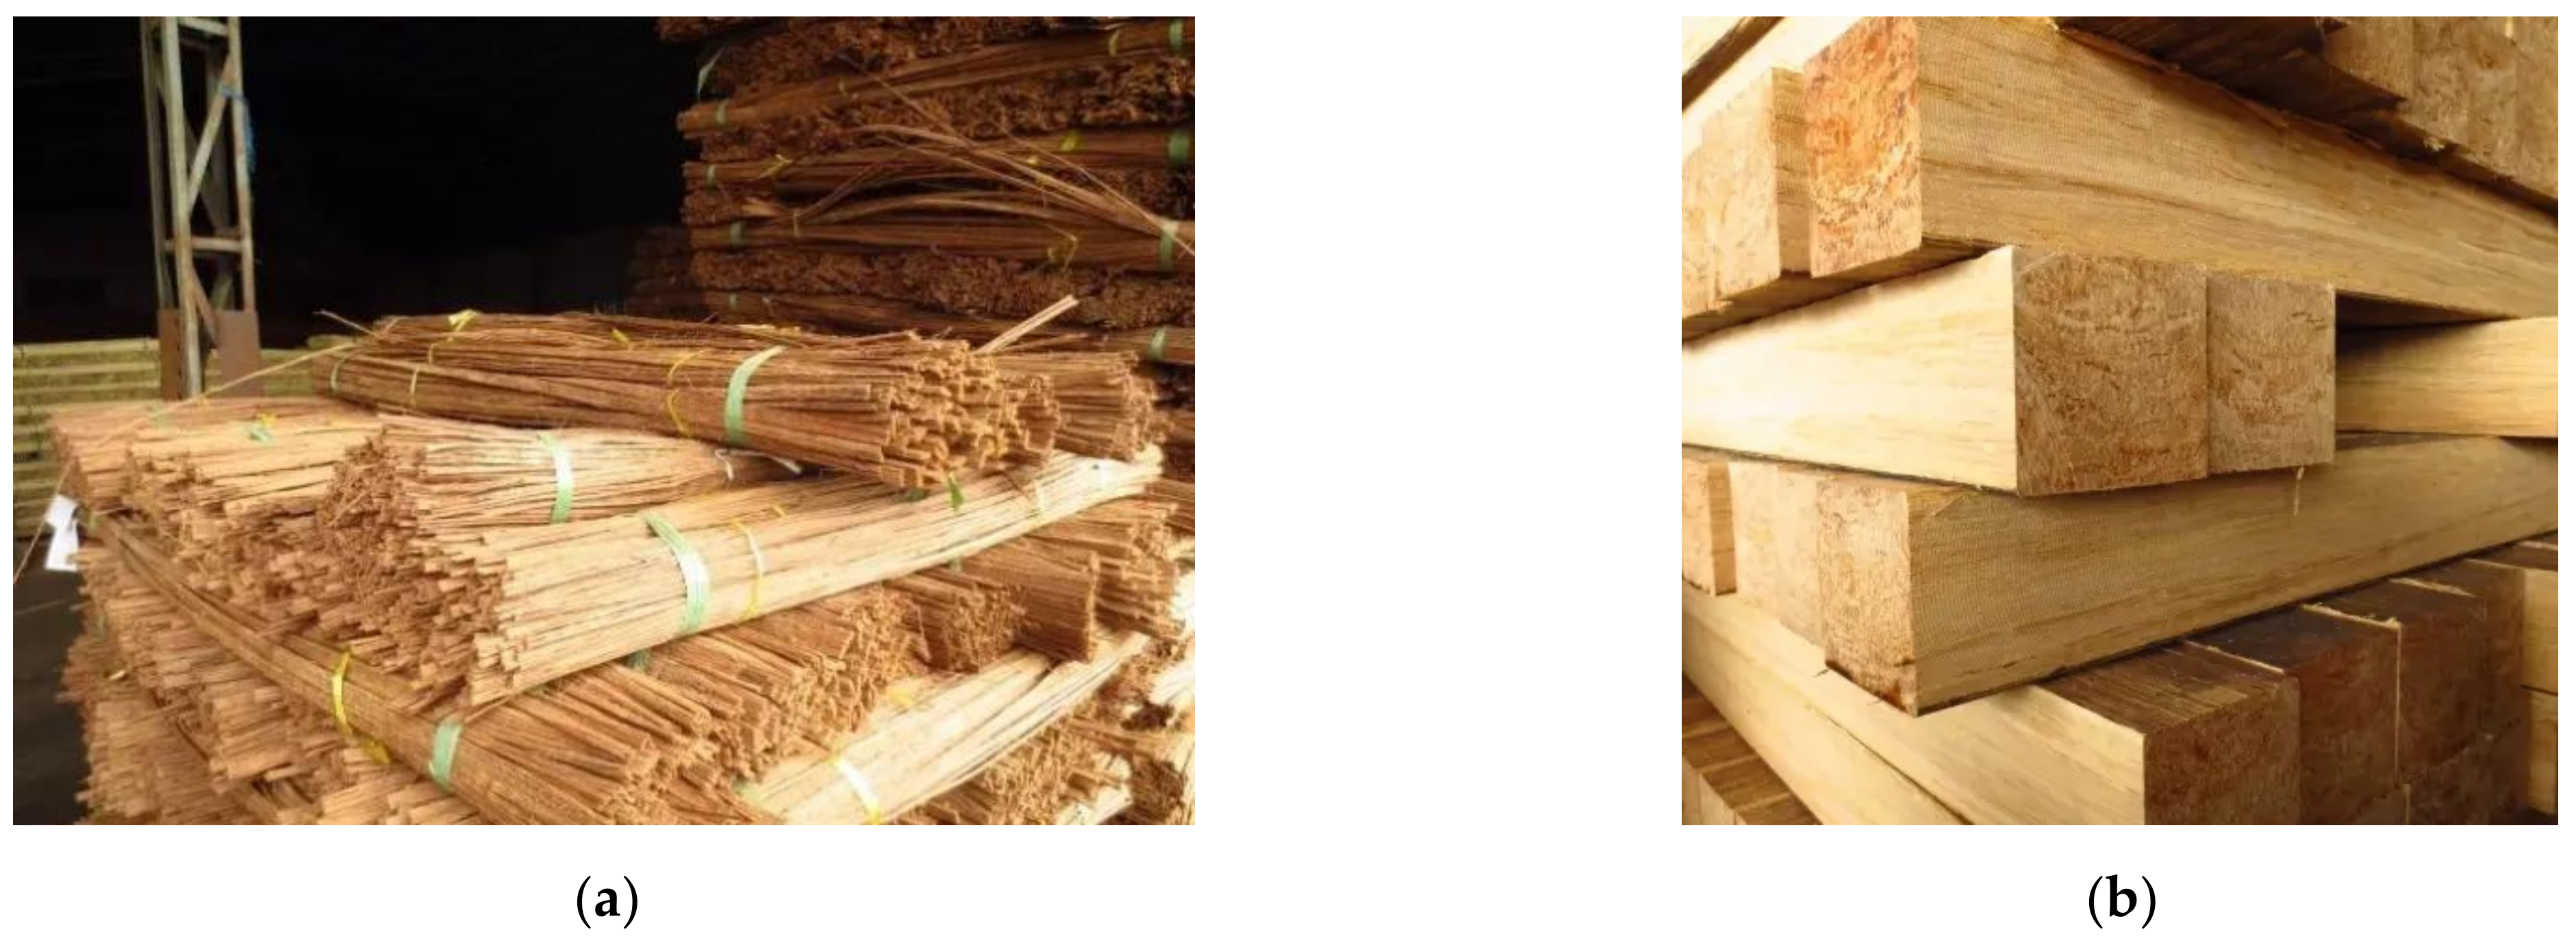 Laminated Bamboo Lumber - China Laminated Bamboo, Plywood